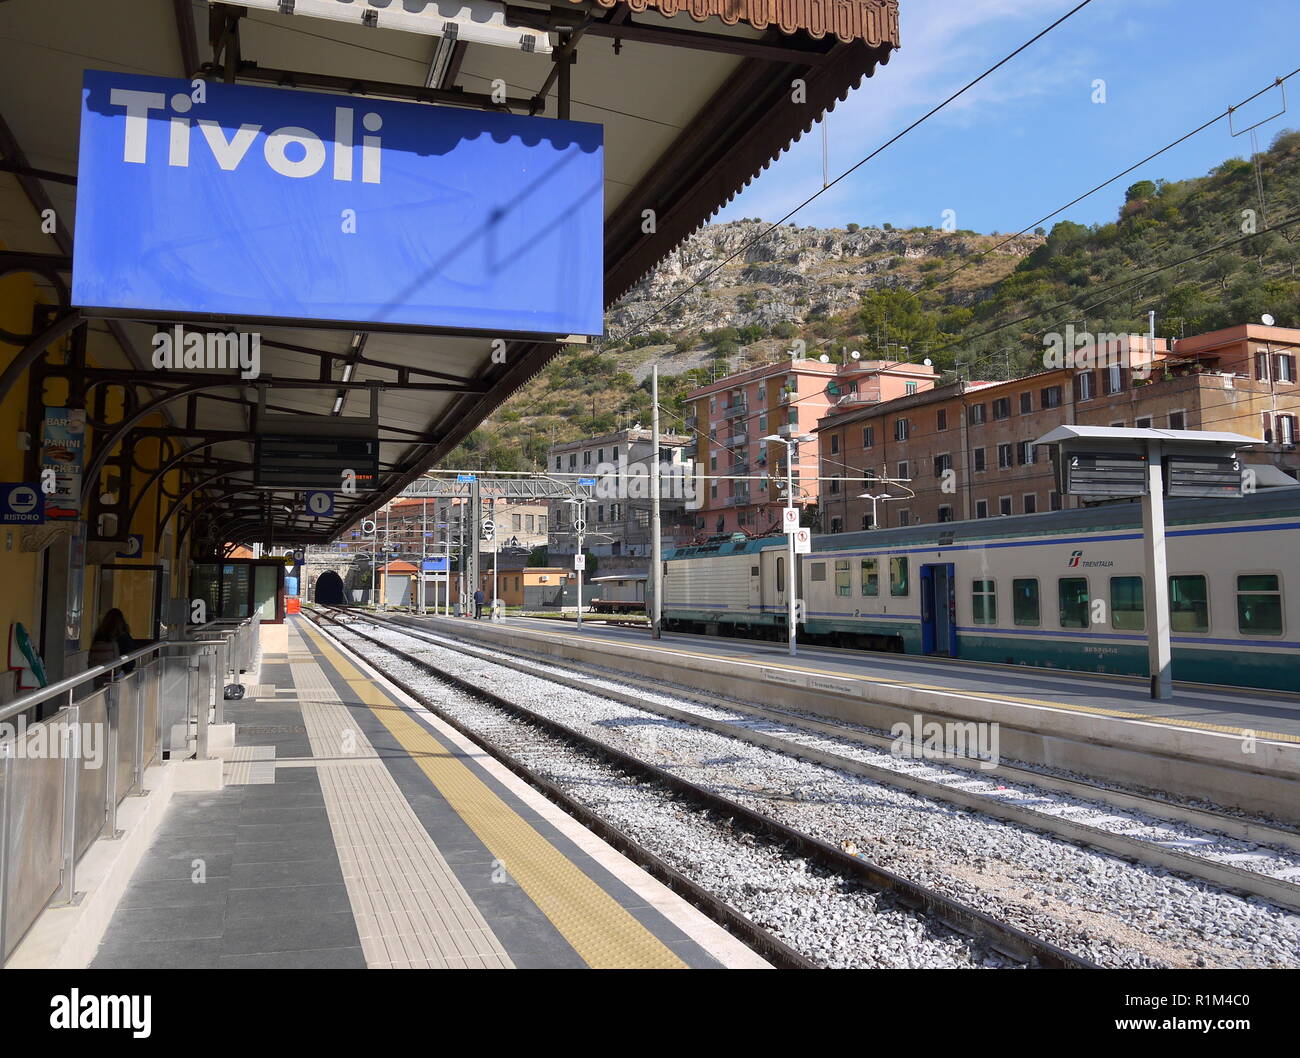 TIVOLI, Italia - SEPTEMPER 29, 2017: una piattaforma a Tivoli stazione ferroviaria in Italia con il treno e la stazione del treno Foto Stock